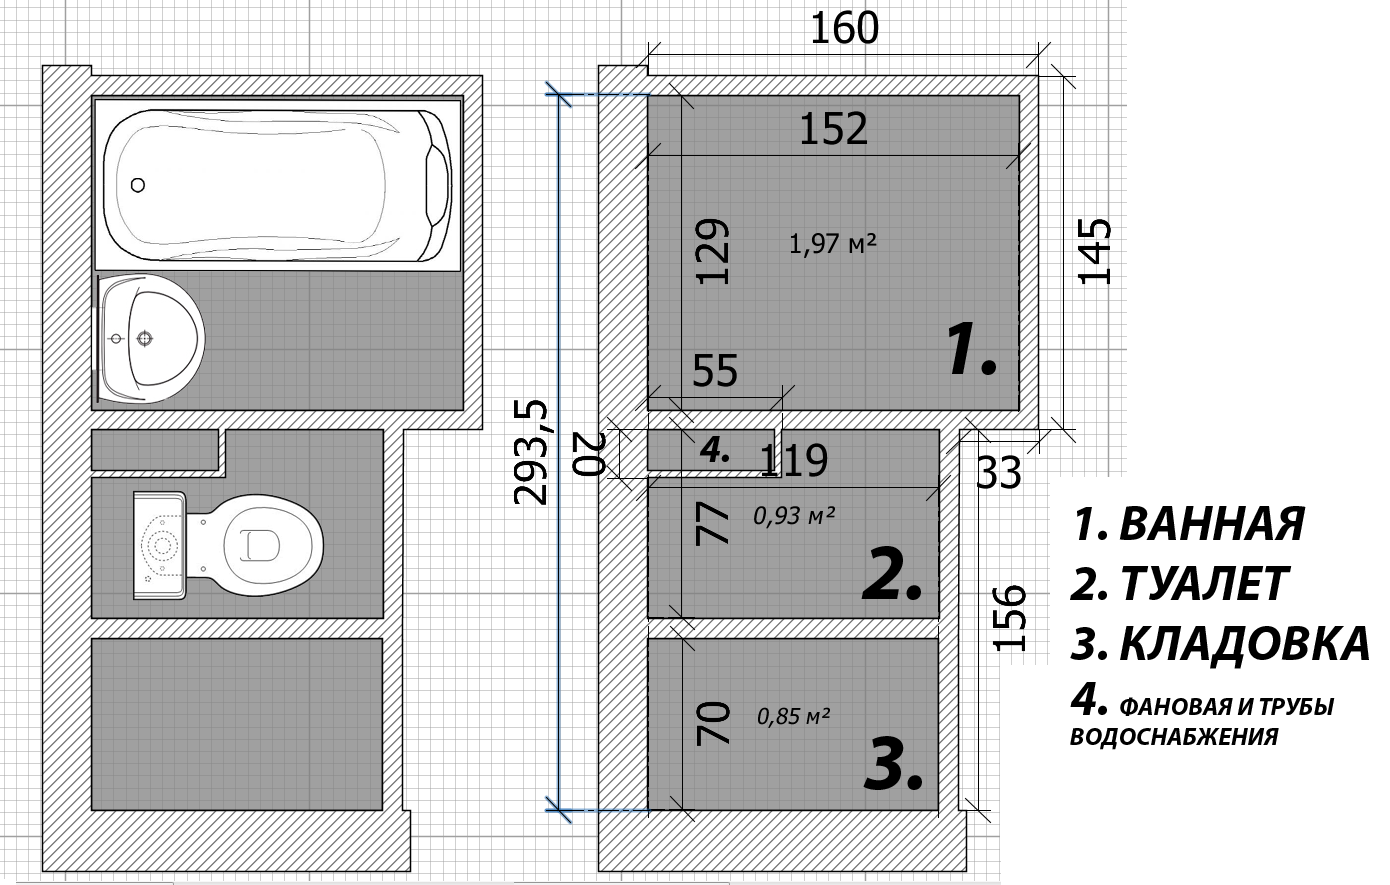 Размеры ванной комнаты: рекомендованные габариты, правила планировки по снип,оптимальный размер в частном доме,стандарт,площадь,минимальные,стандартные,размеры сантехники, ванны,санузла,санузел для мг